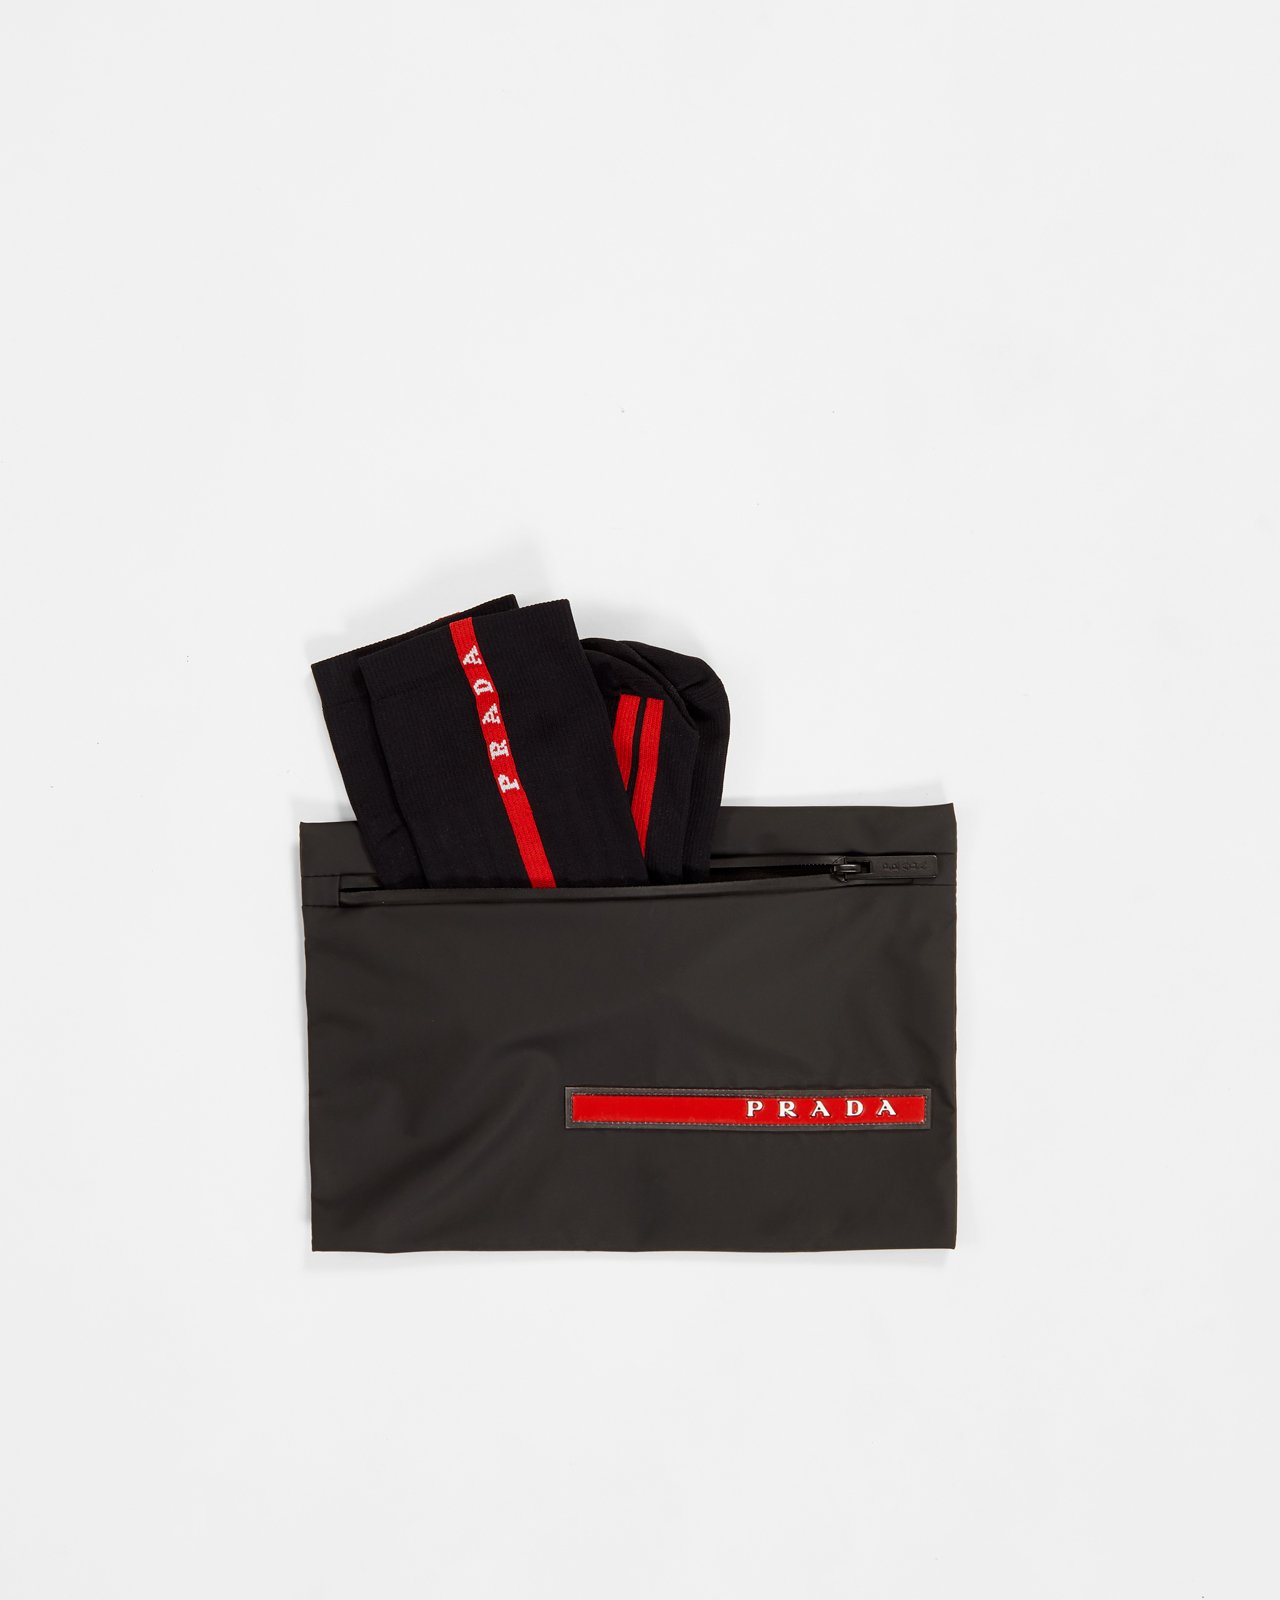 Prada - Men's Logo Stripe Socks Black - Accessories - Black - Image 2